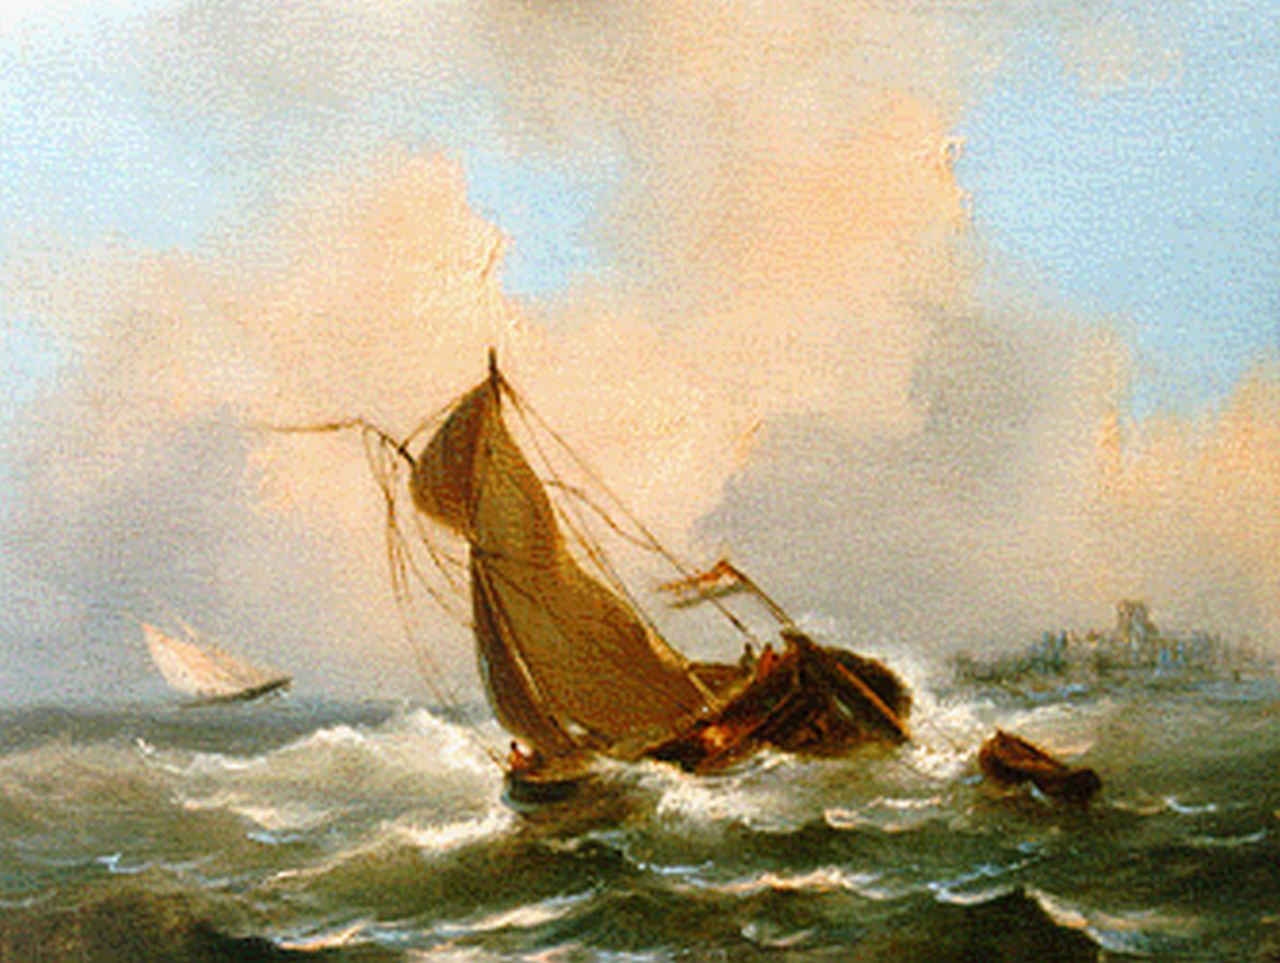 Emmerik G. van | Govert van Emmerik, Schepen op woelige zee, olieverf op paneel 13,1 x 17,3 cm, gesigneerd linksonder initialen